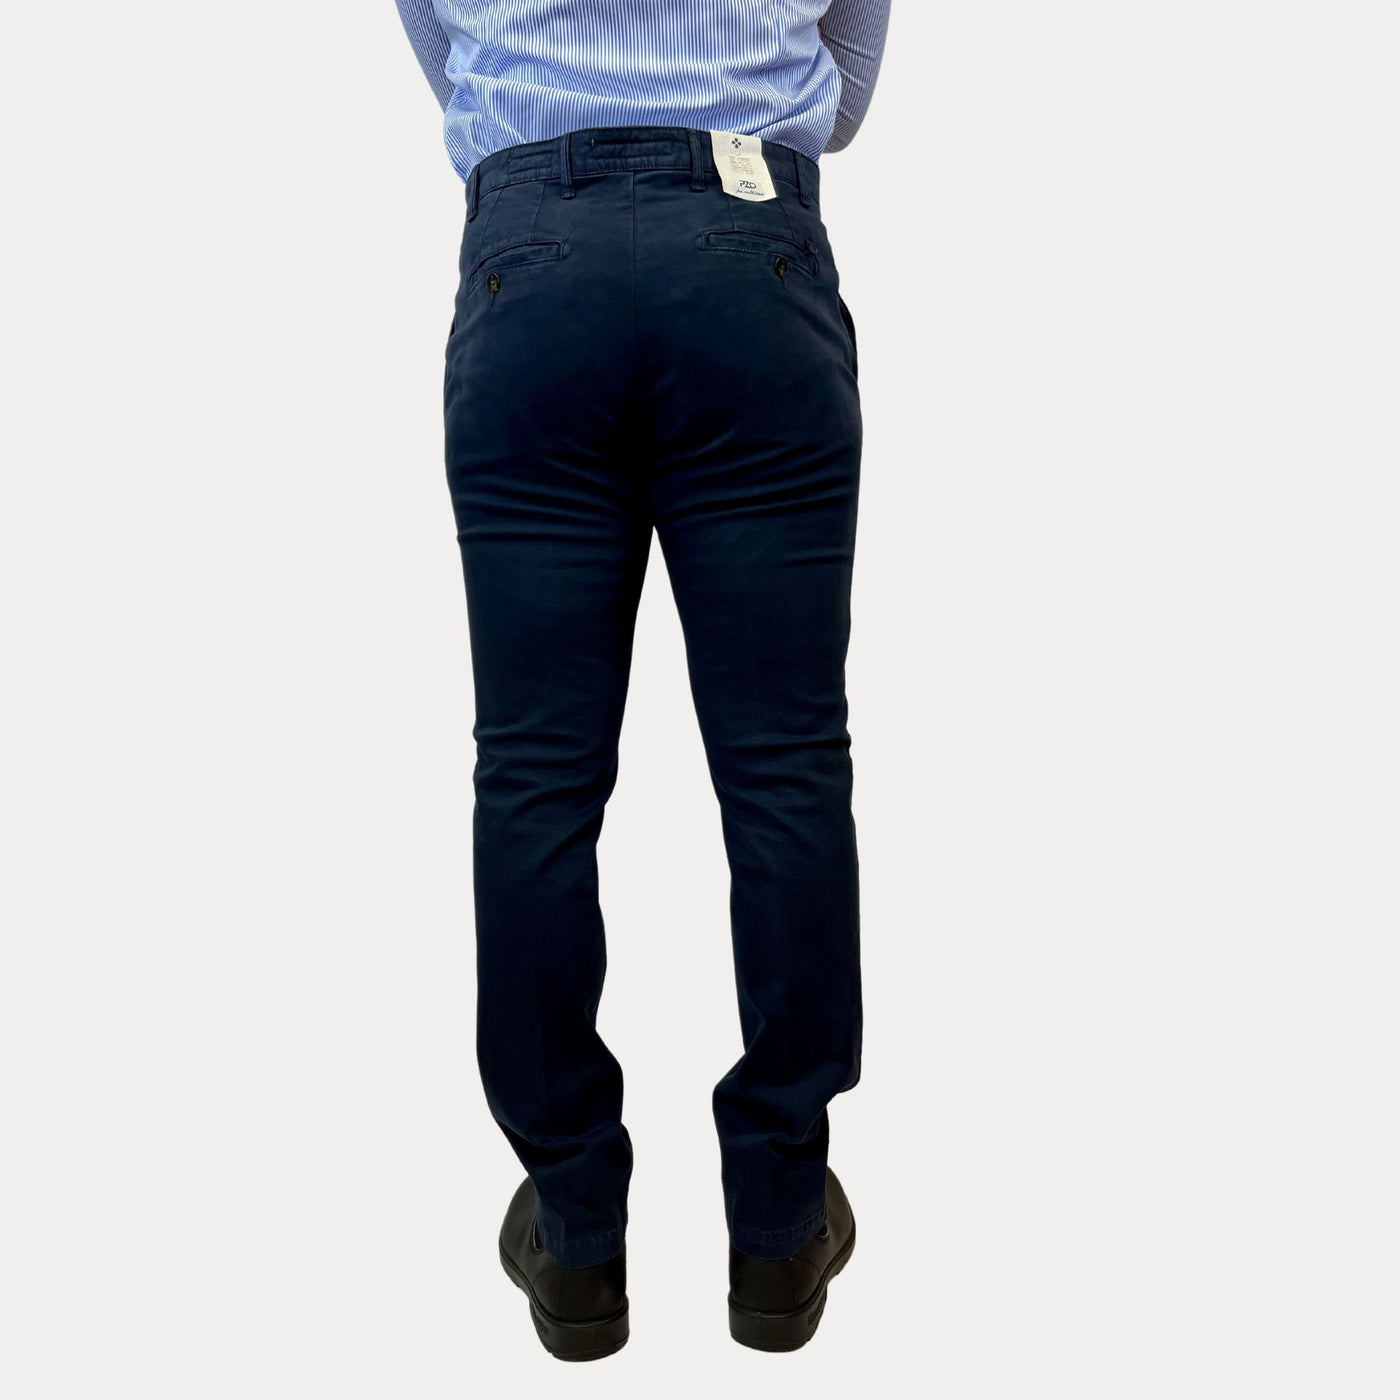 Pantalone da uomo blu vista retro su modello